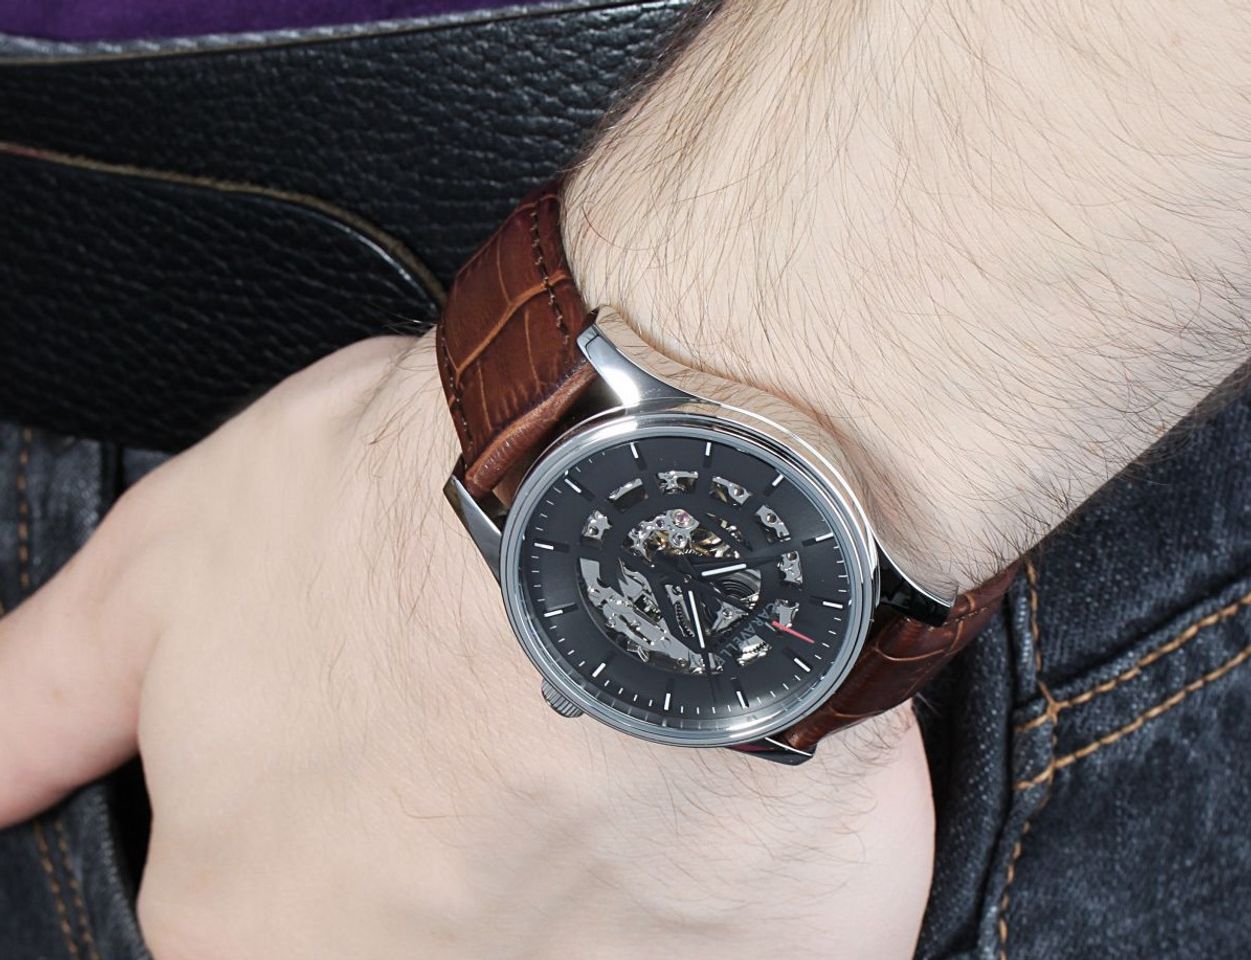 Chiếc đồng hồ Caravelle New York trên tay mang sức hút khó cưỡng